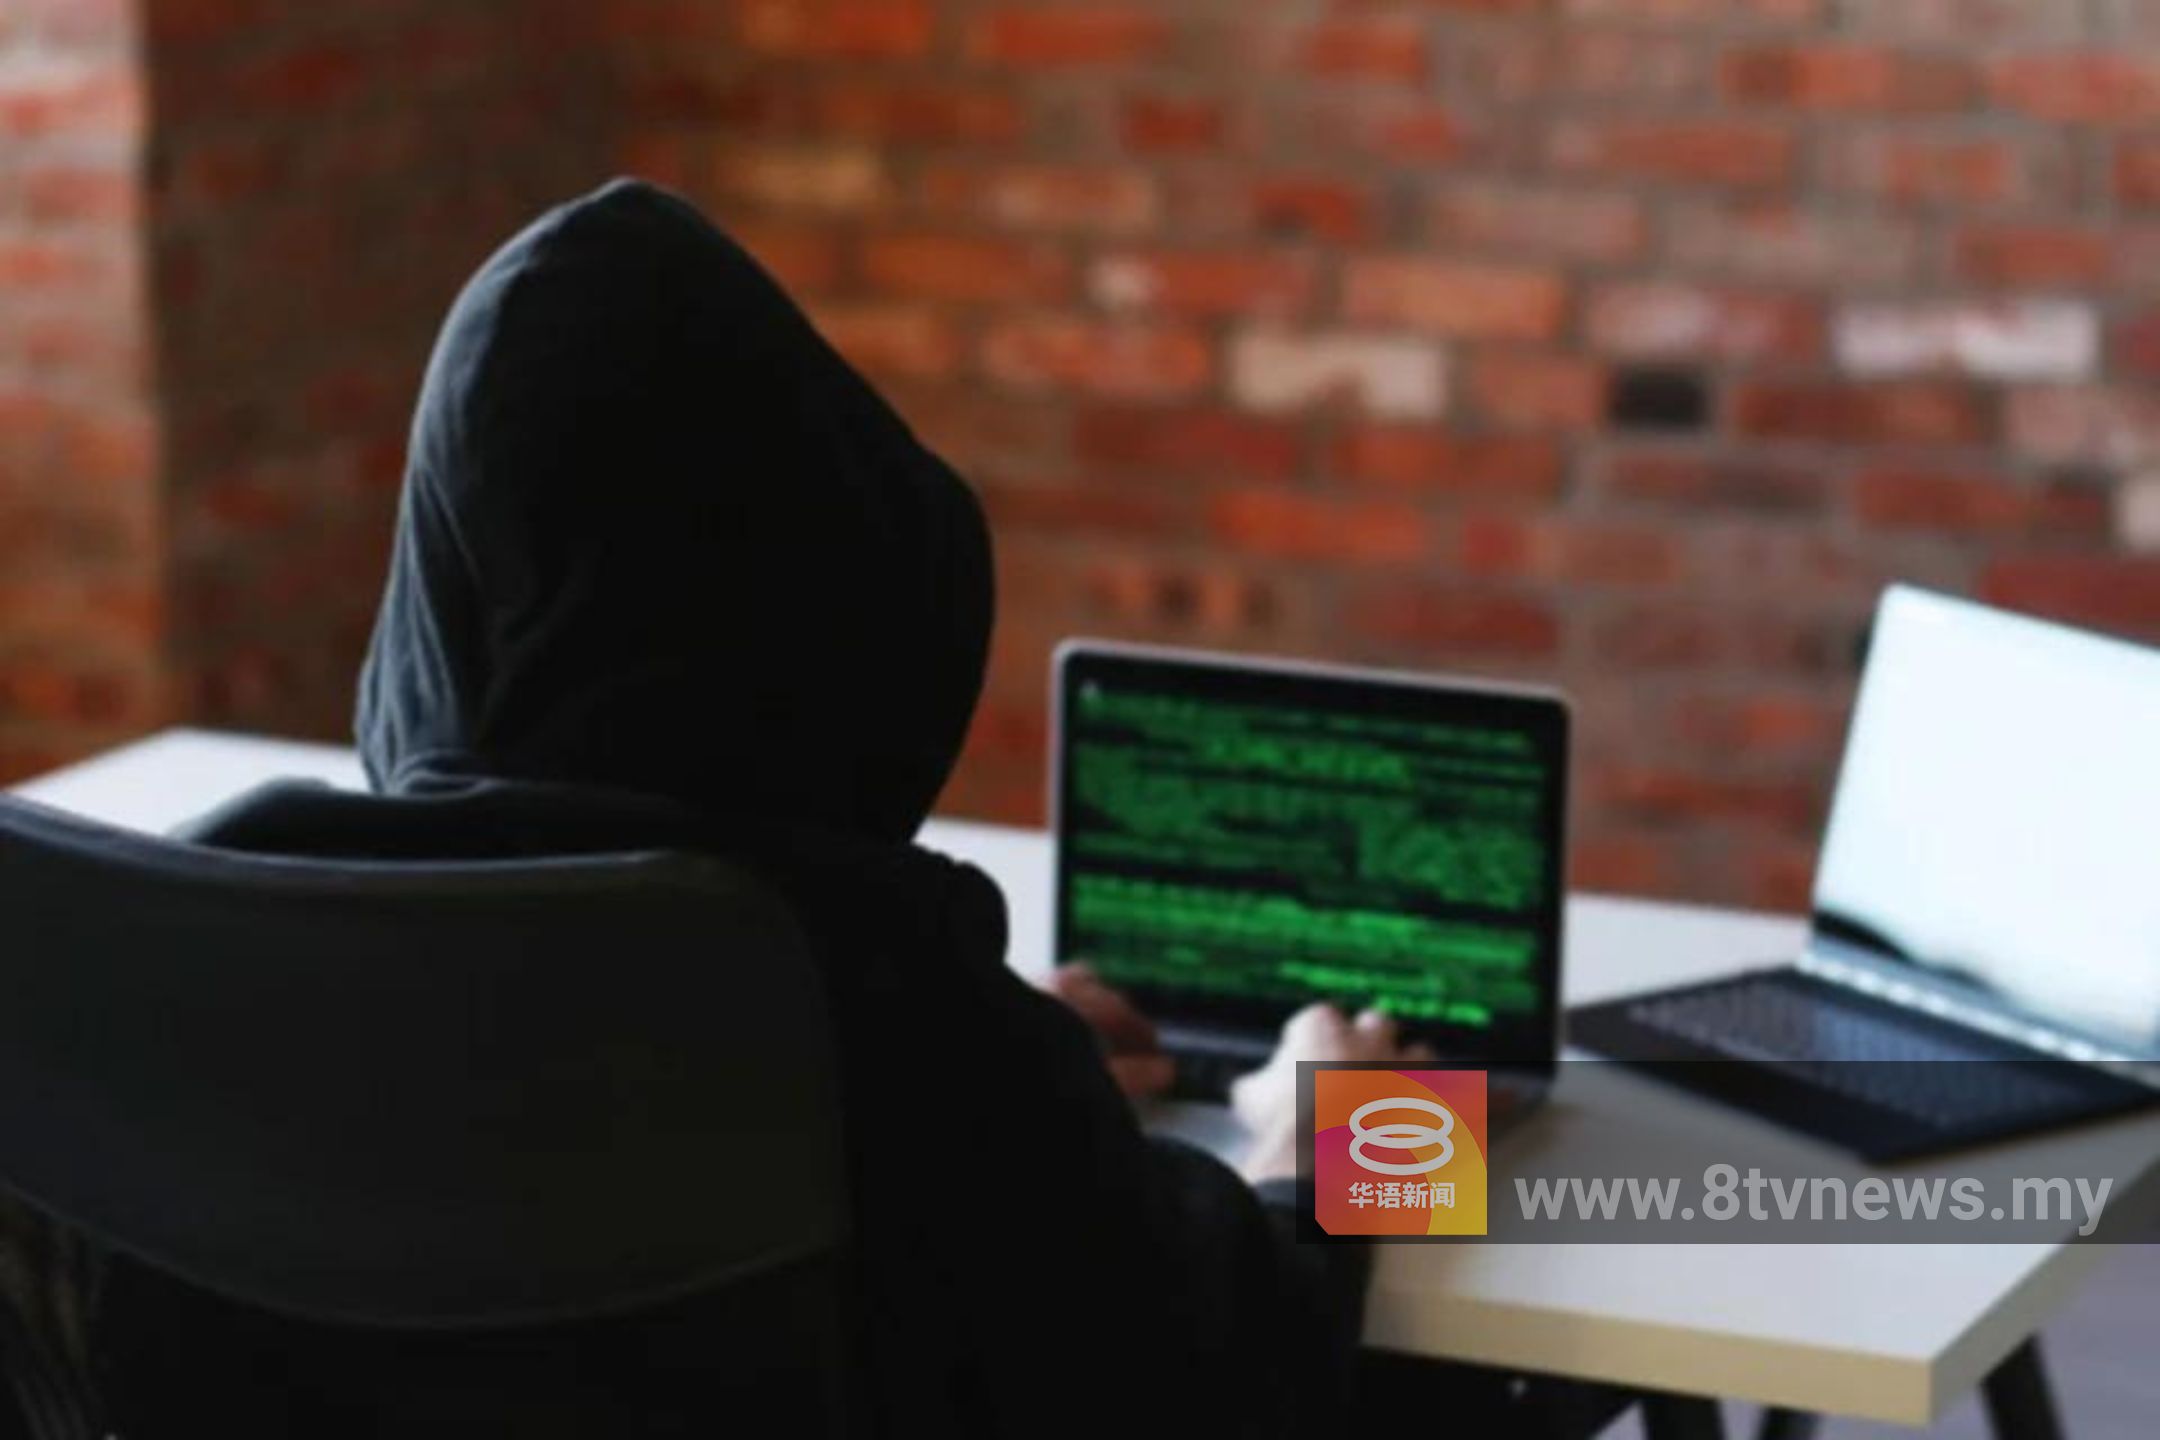 草拟新法加强数码安全  遏制猖獗网络诈骗活动